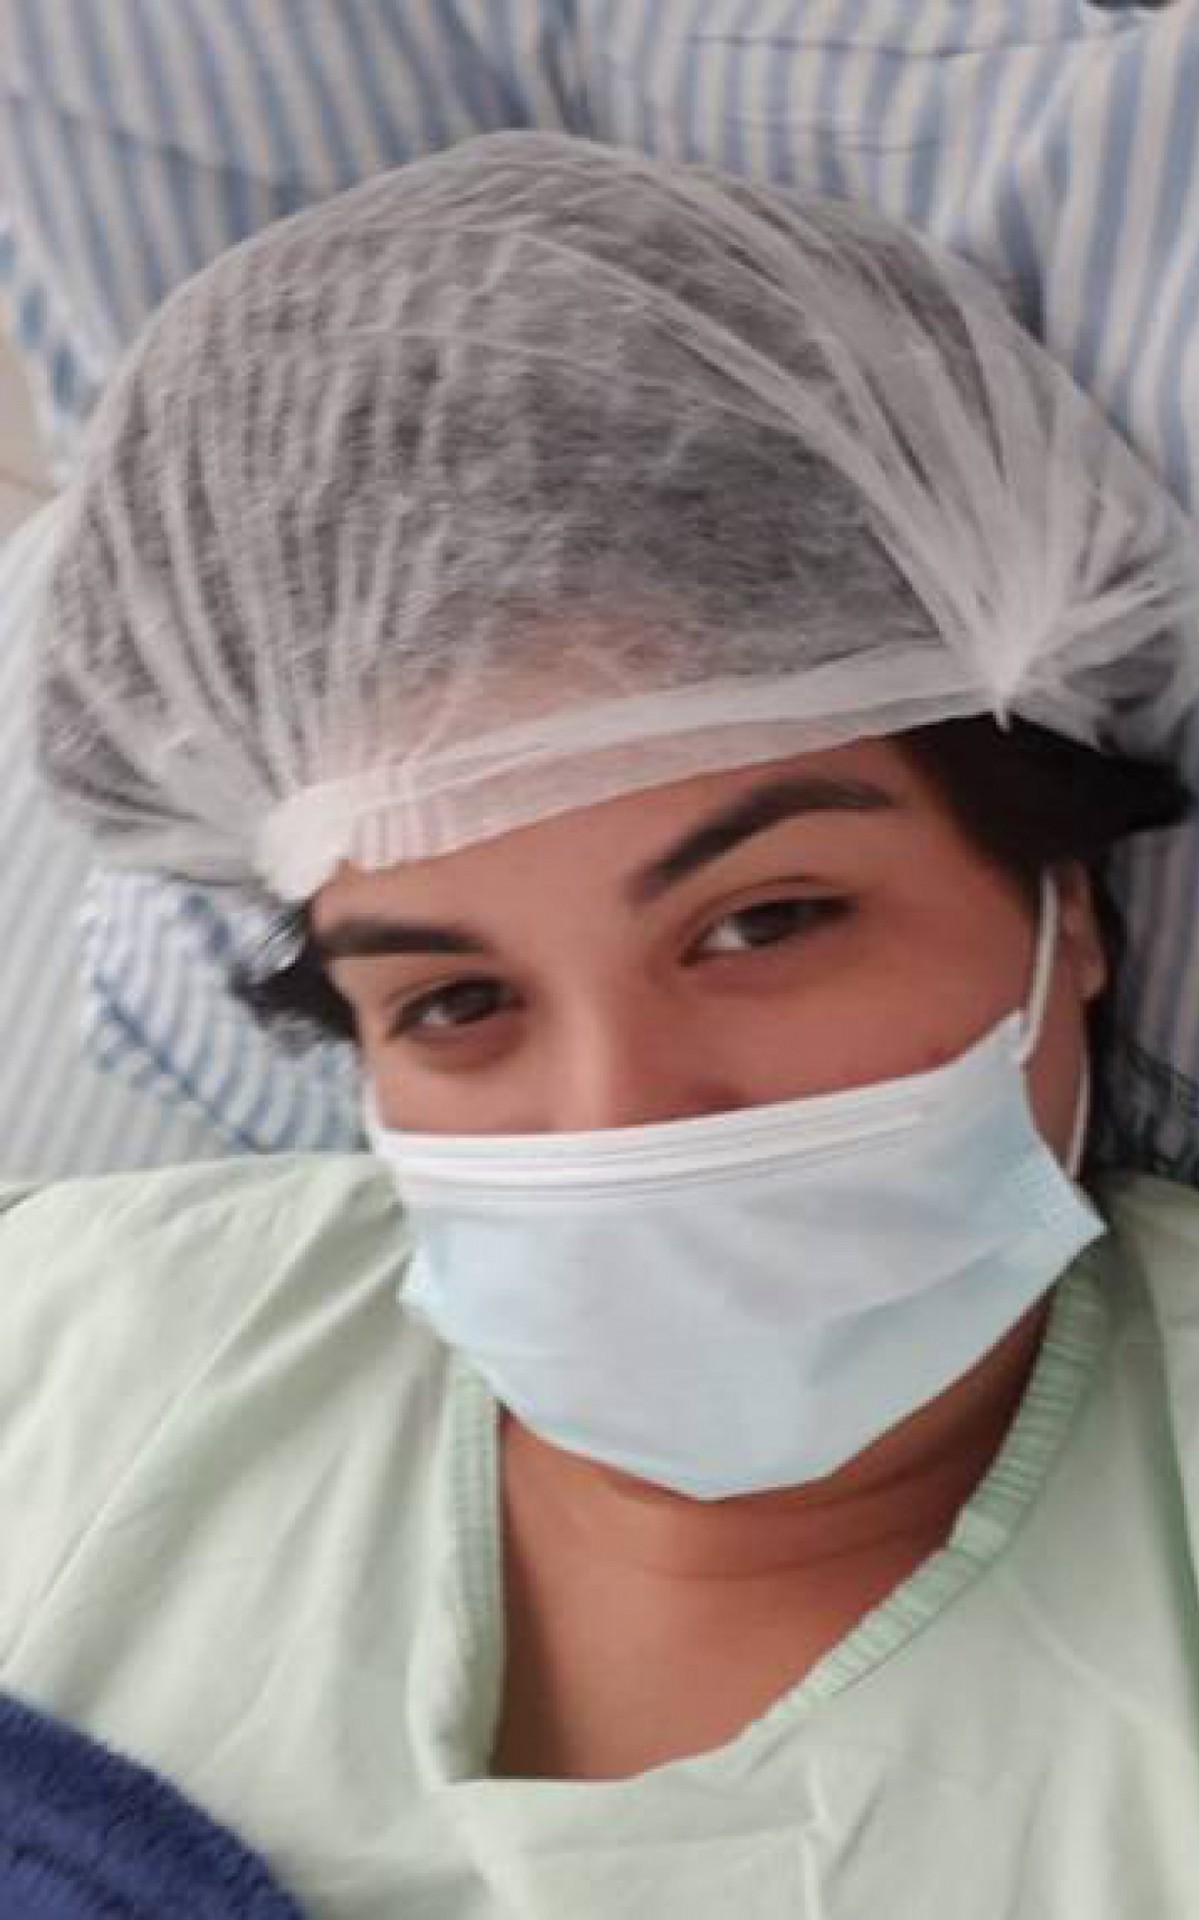 Após ser transferida de hospital, Daiana apresenta quadro de saúde estável - Arquivo pessoal